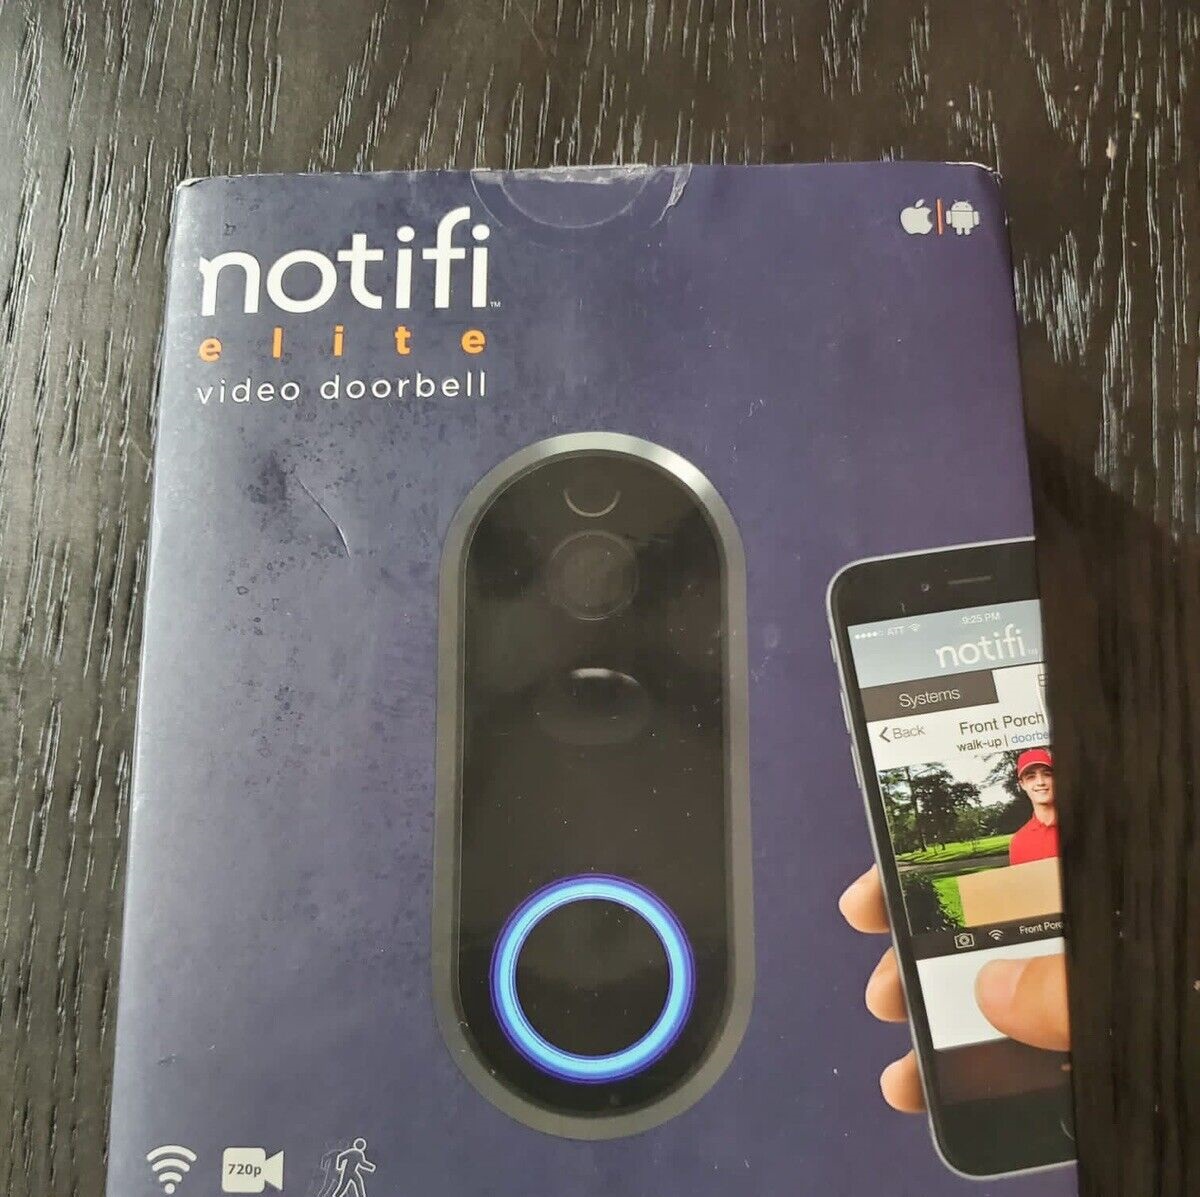 How To Install Notifi Elite Video Doorbell